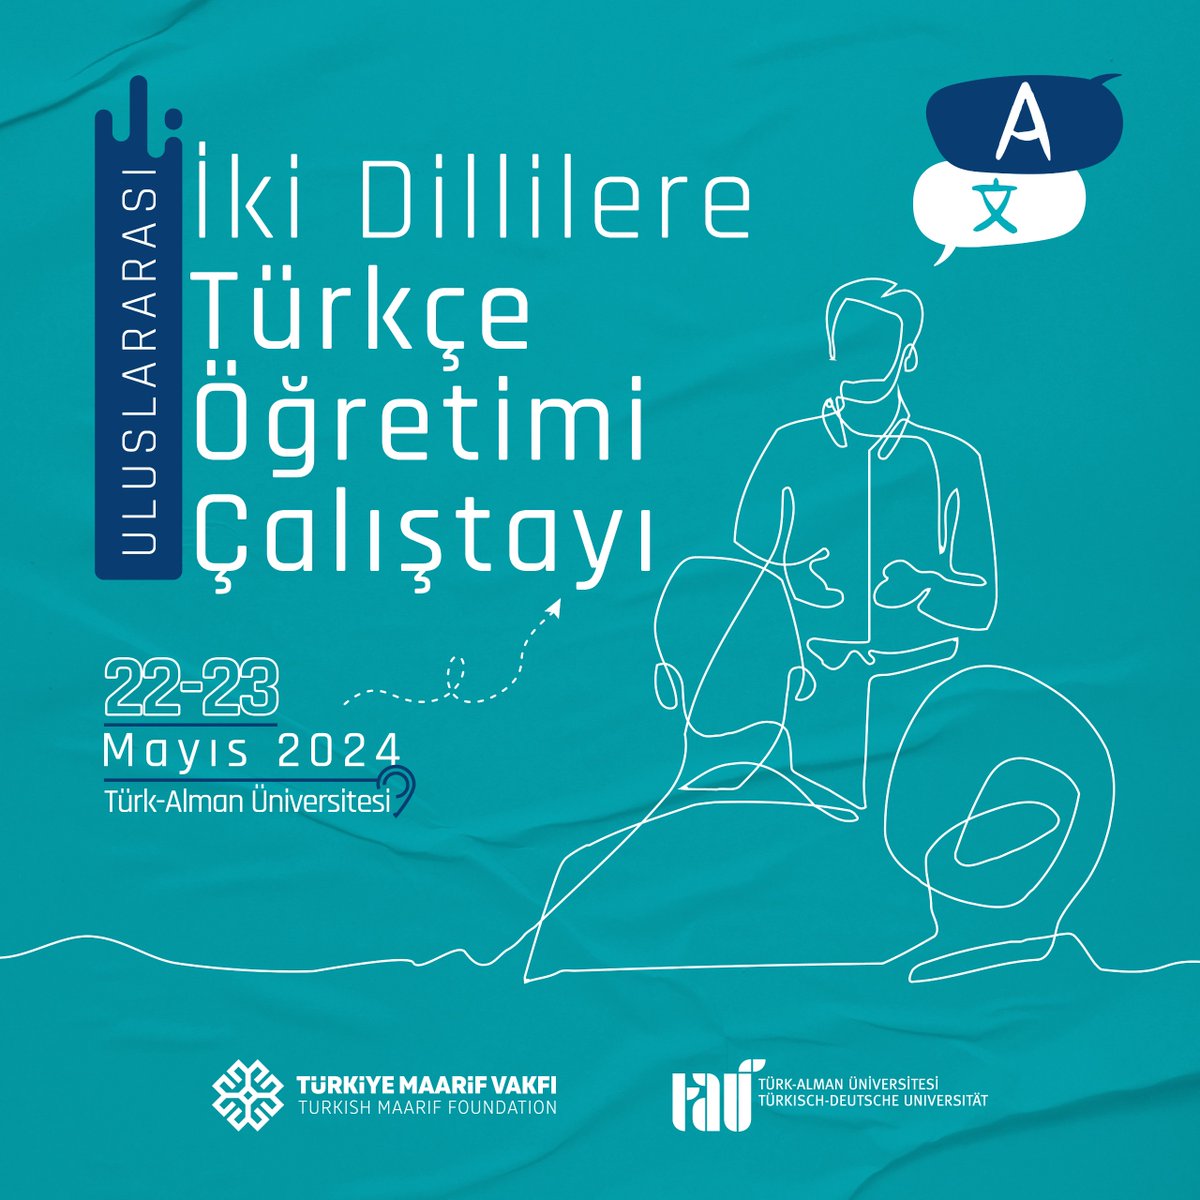 22-23 Mayısta Uluslararası İki Dillilere Türkçe Öğretimi Çalıştayı Vakfımız ve Türk-Alman Üniversitesi iş birliğinde düzenlenecek. Avrupa’daki iki dillilere Türkçe öğretimi süreçlerini çeşitli boyutlarıyla değerlendirmek ve bu konuda ortaya çıkan sonuçları ilgili kurumlar ve